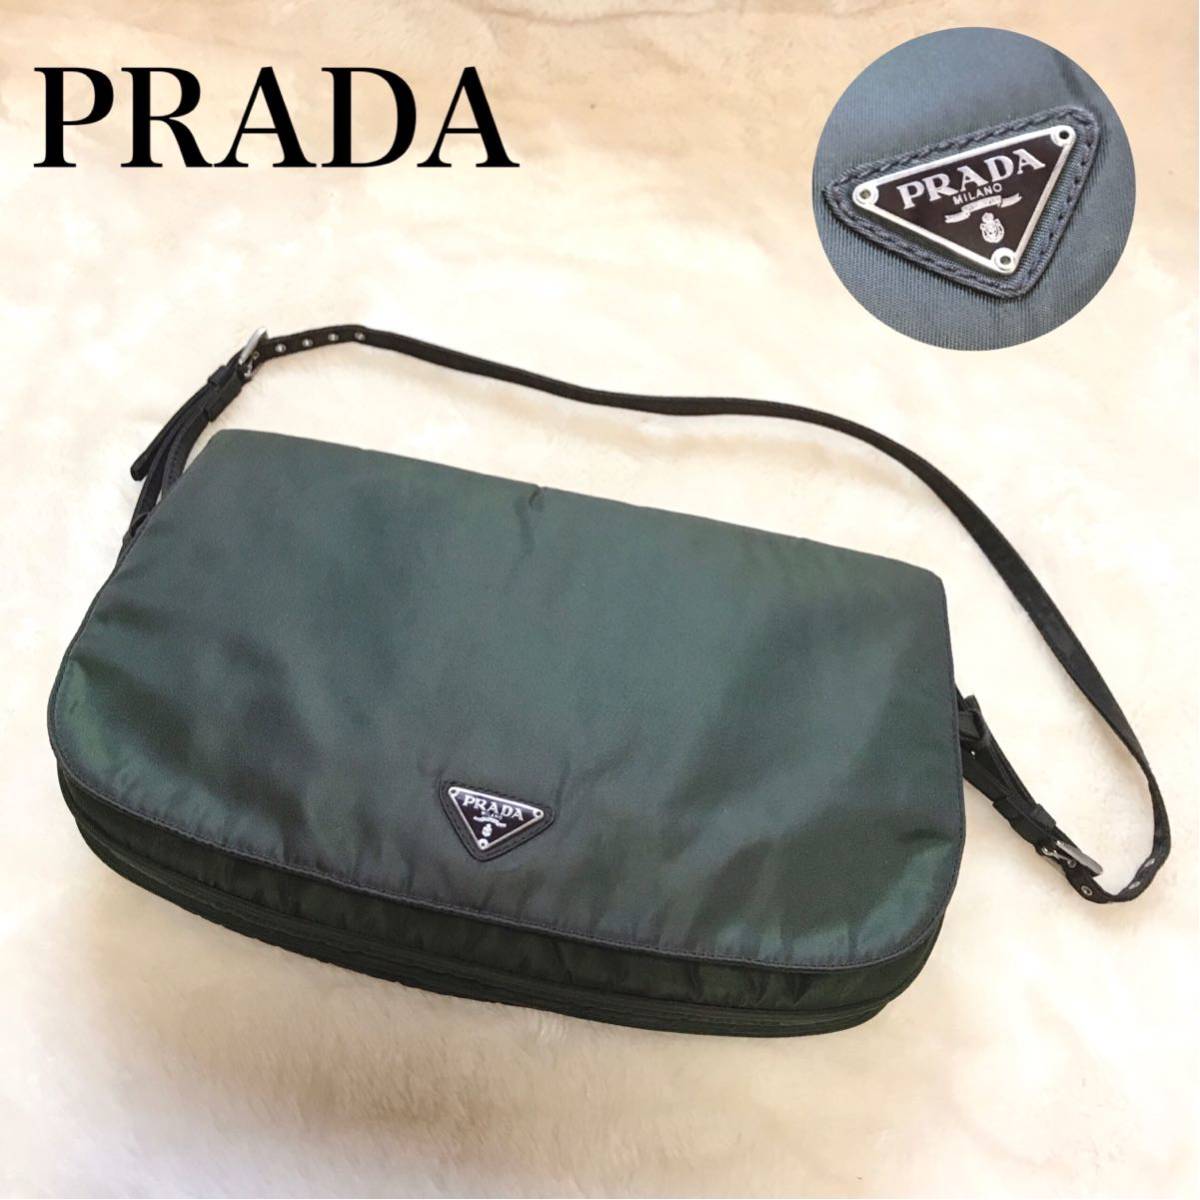 希少品 PRADA プラダ ショルダーバッグ フラップ 三角ロゴプレート レディース 軽量 収納スペース 多数 ブランド バッグ 鞄 レザー